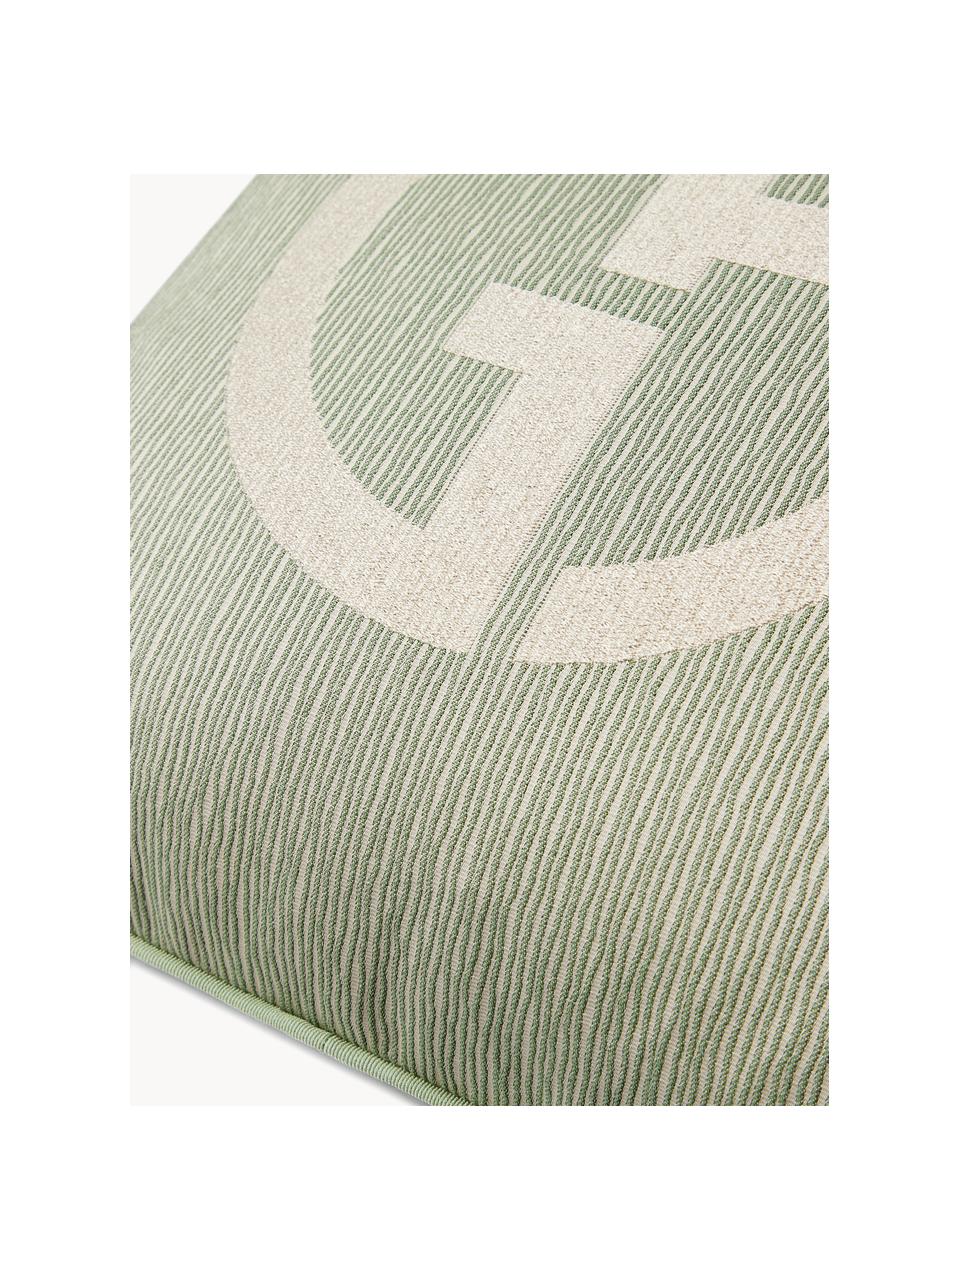 Poduszka dekoracyjna Janette, Oliwkowy zielony, jasny beżowy, S 40 x D 40 cm